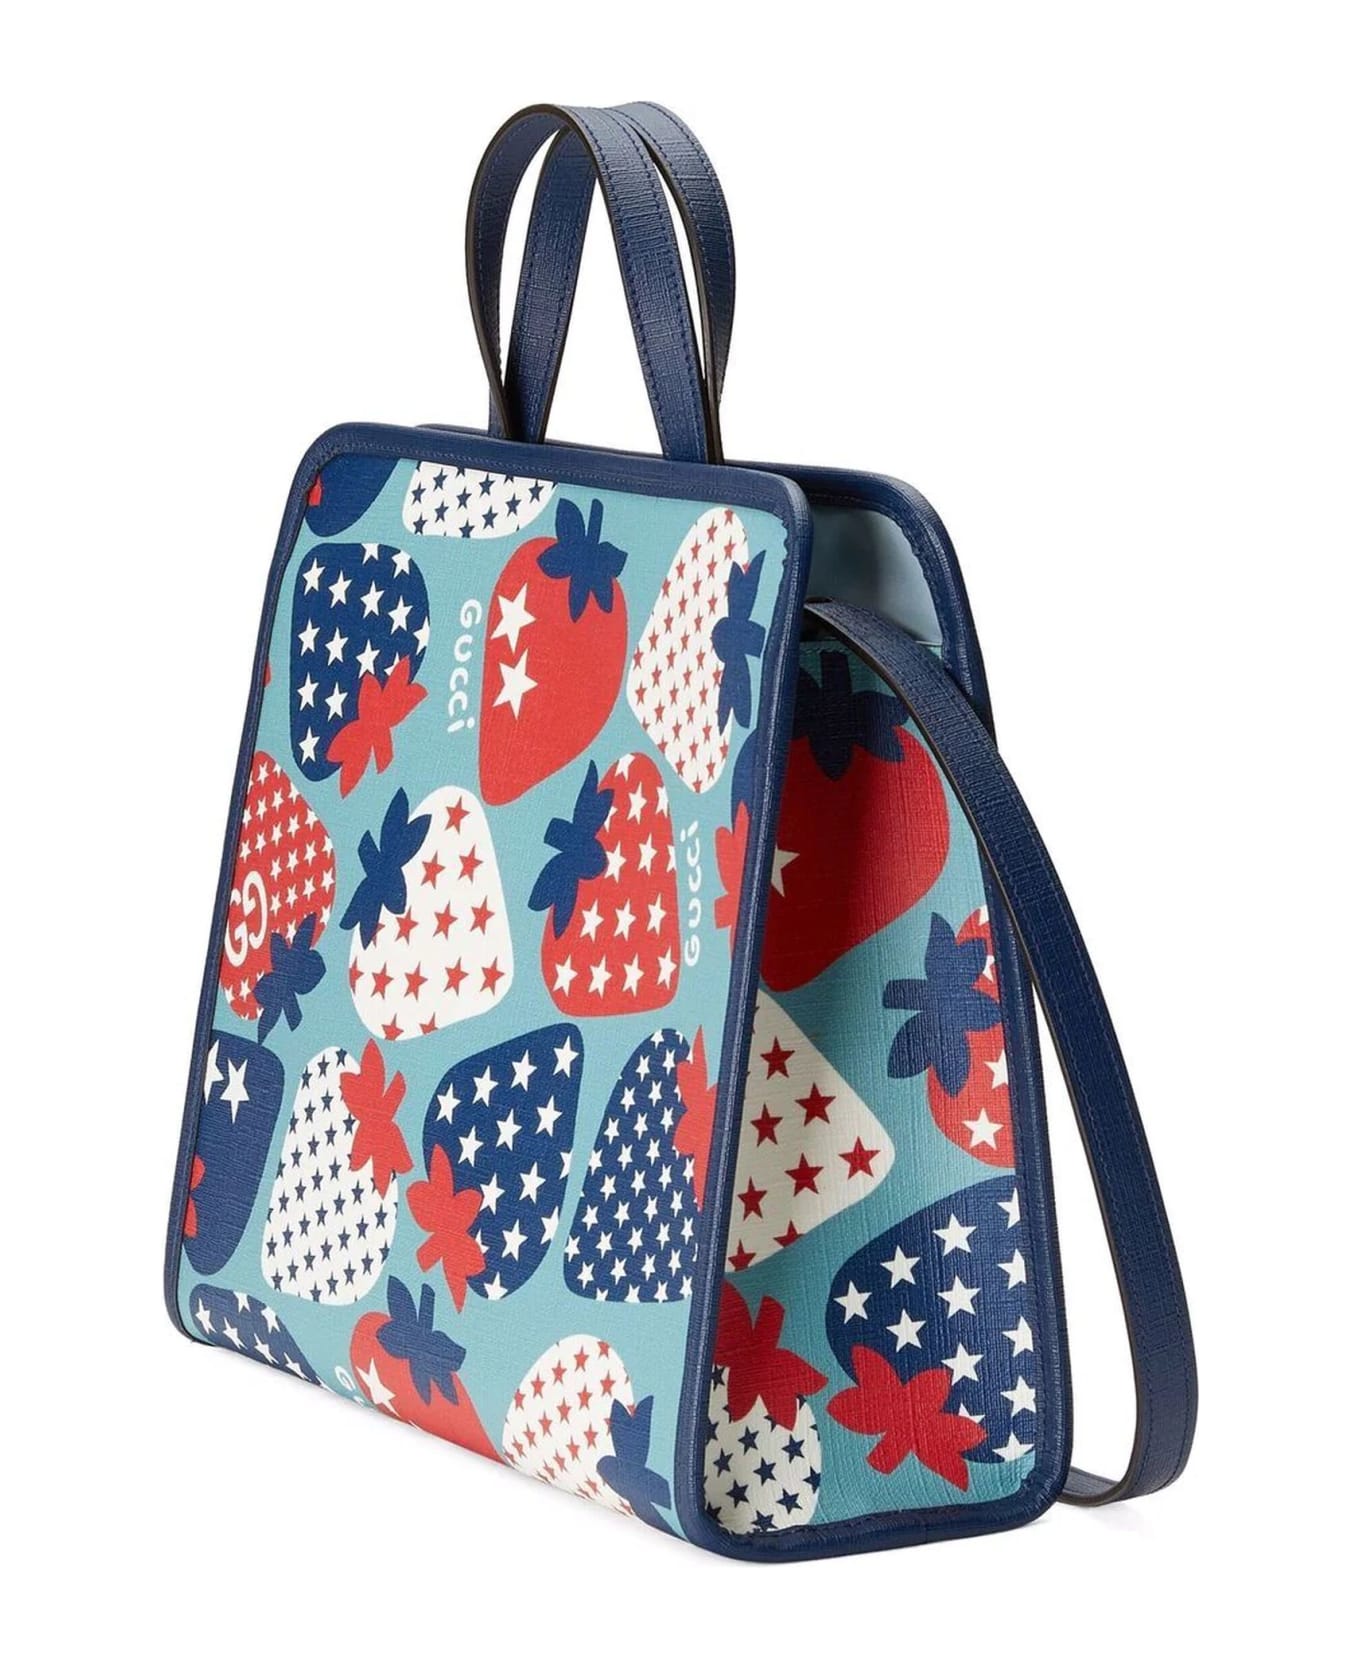 Gucci Children's Strawberry Star Tote Bag - Multicolor